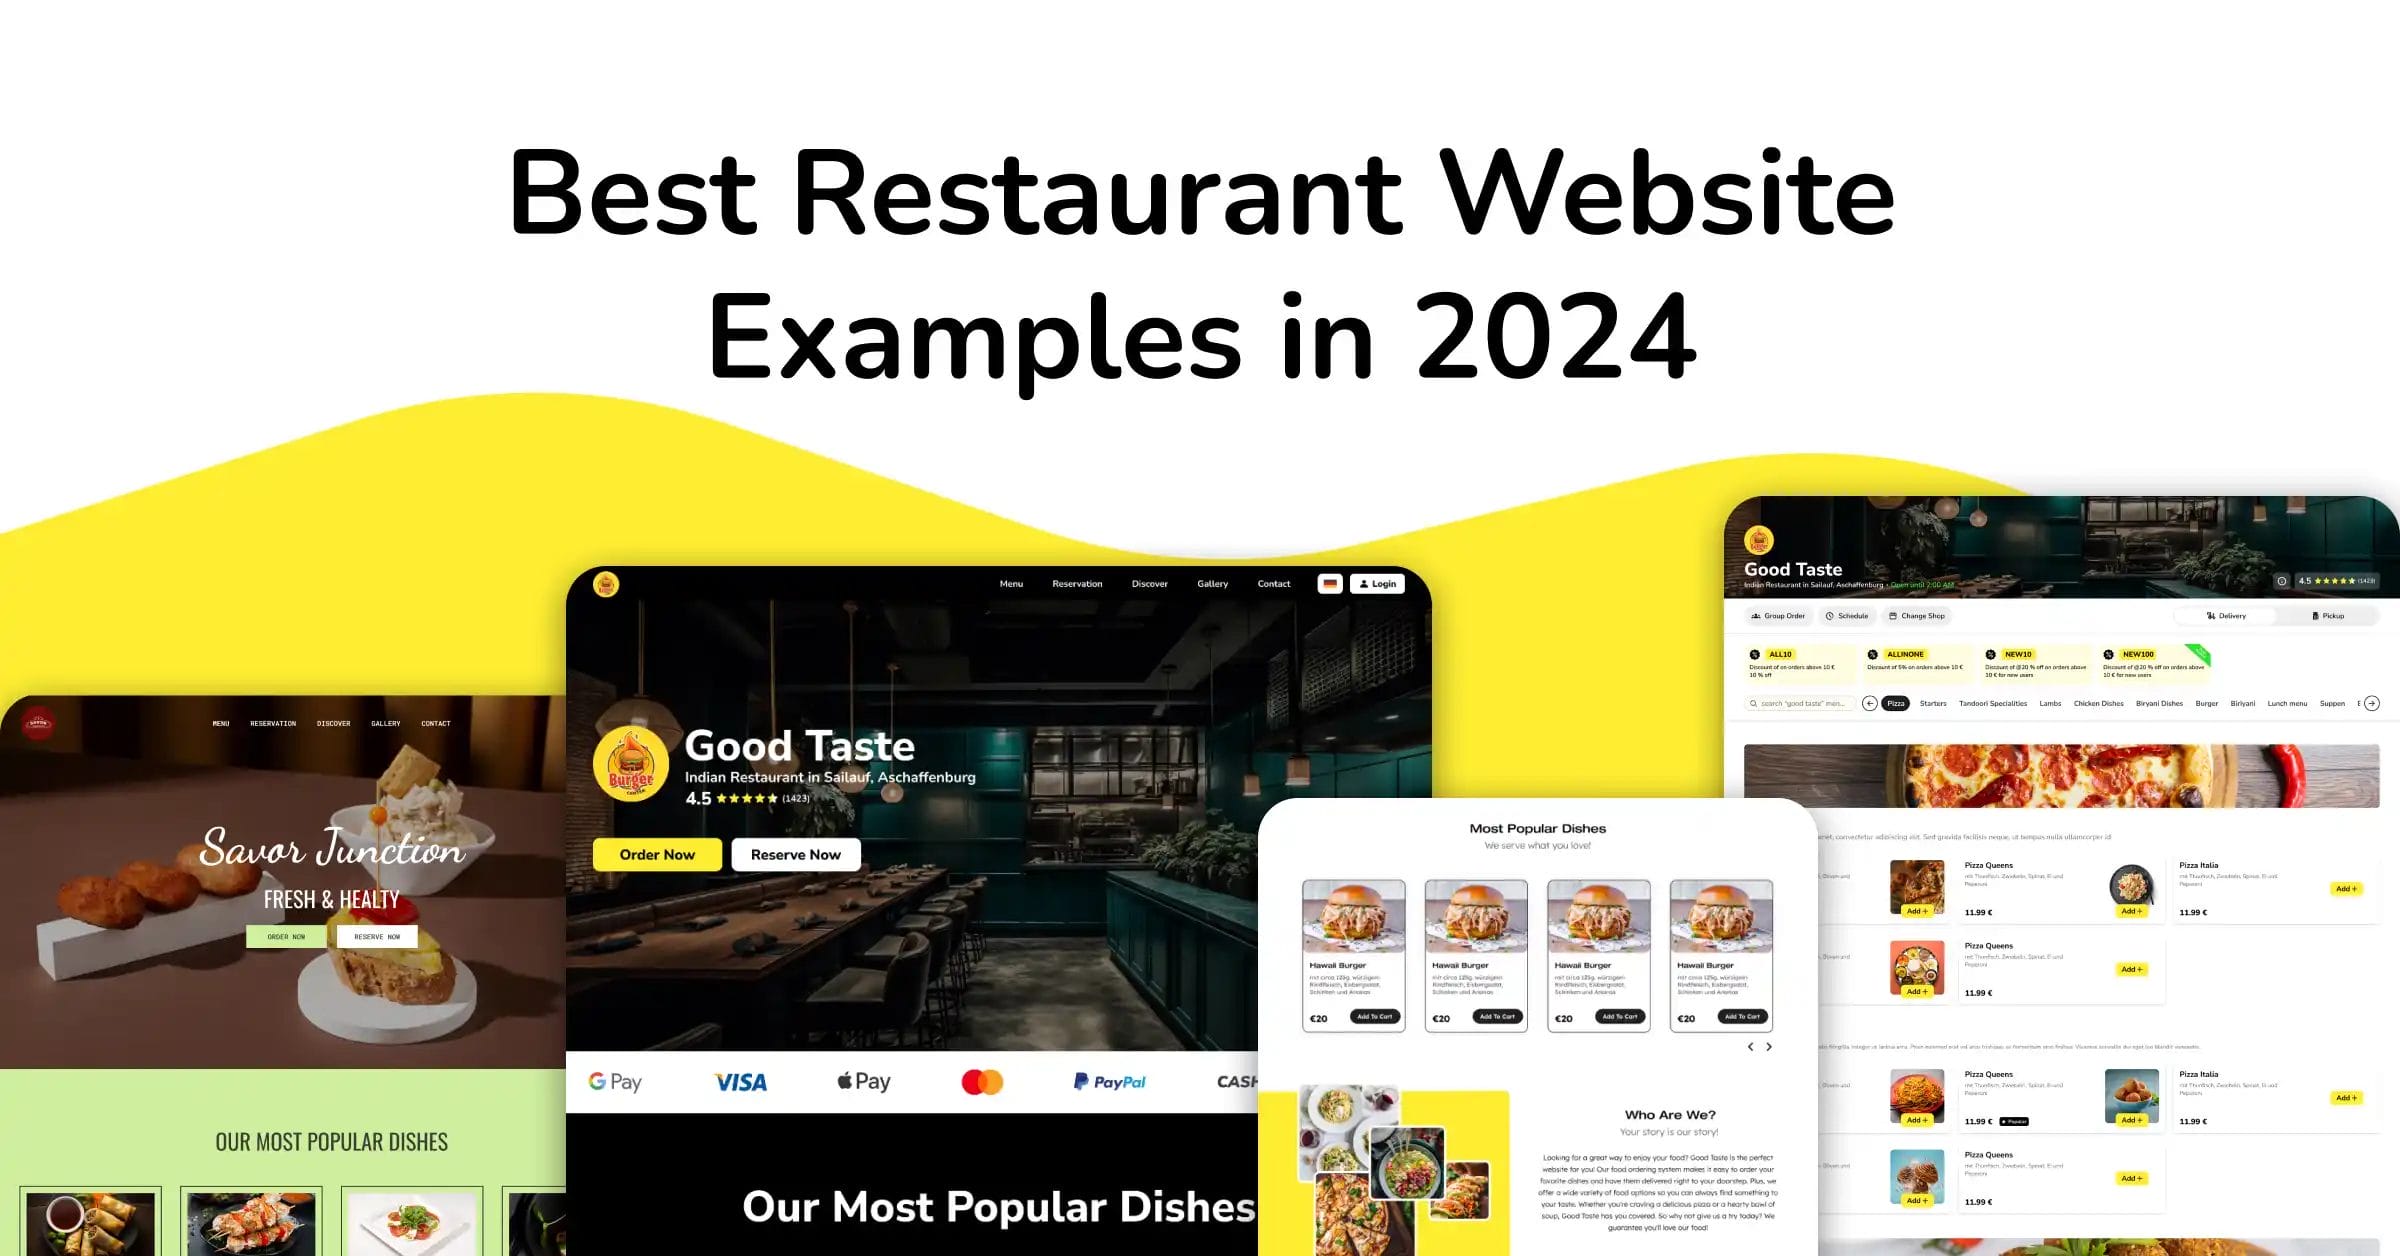 The 6 Best Restaurant Website Examples in 2024